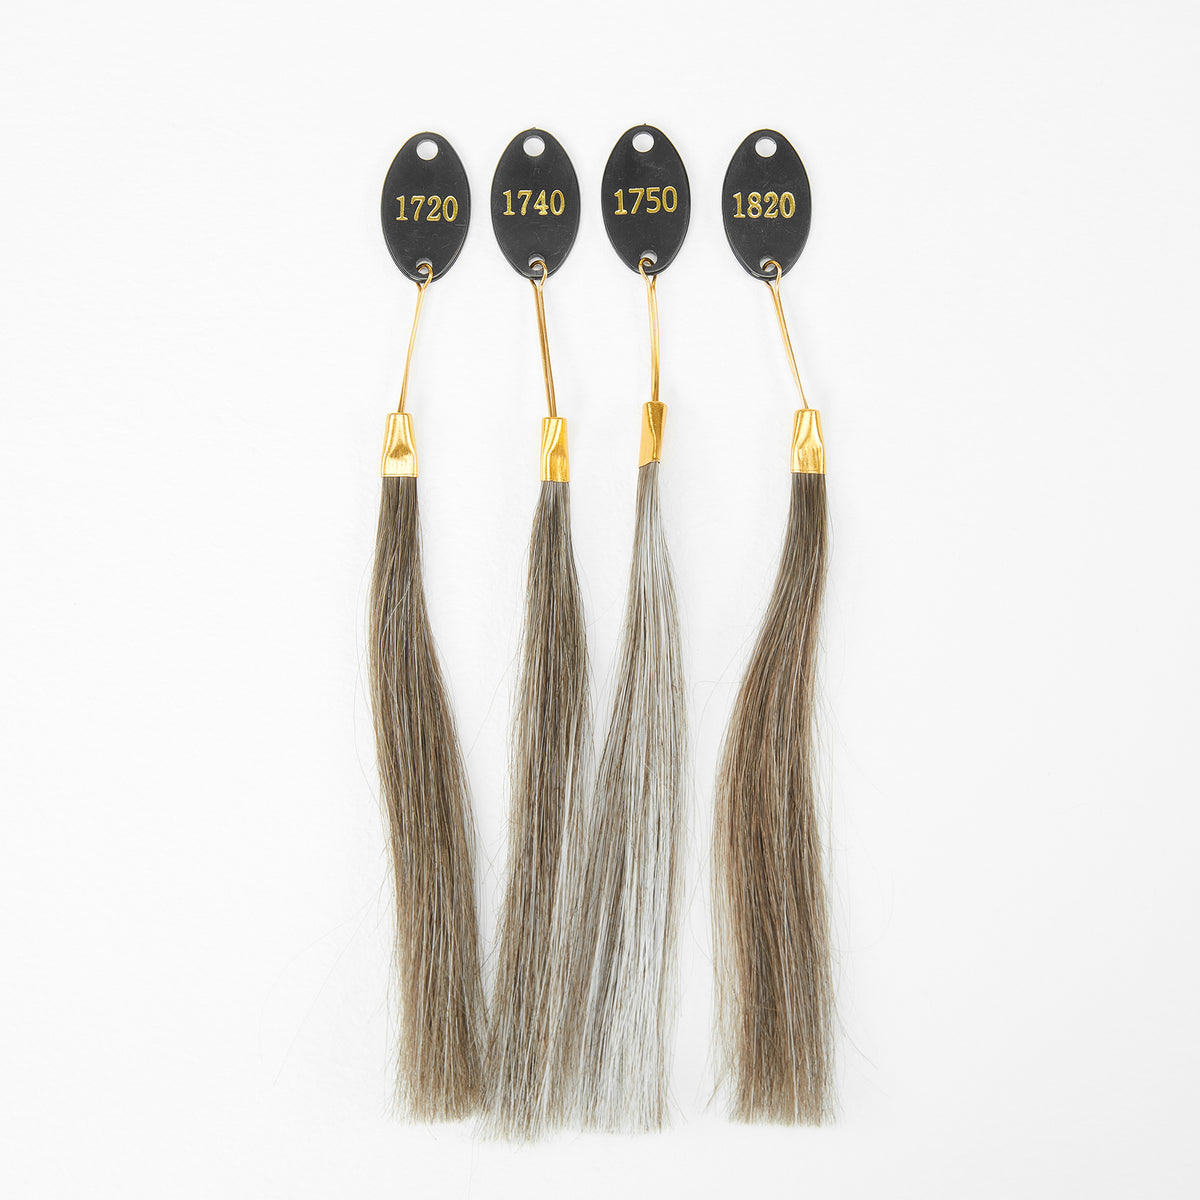 Anello colorato per sistema di capelli | Campione di capelli Toupee per abbinare il colore dei capelli